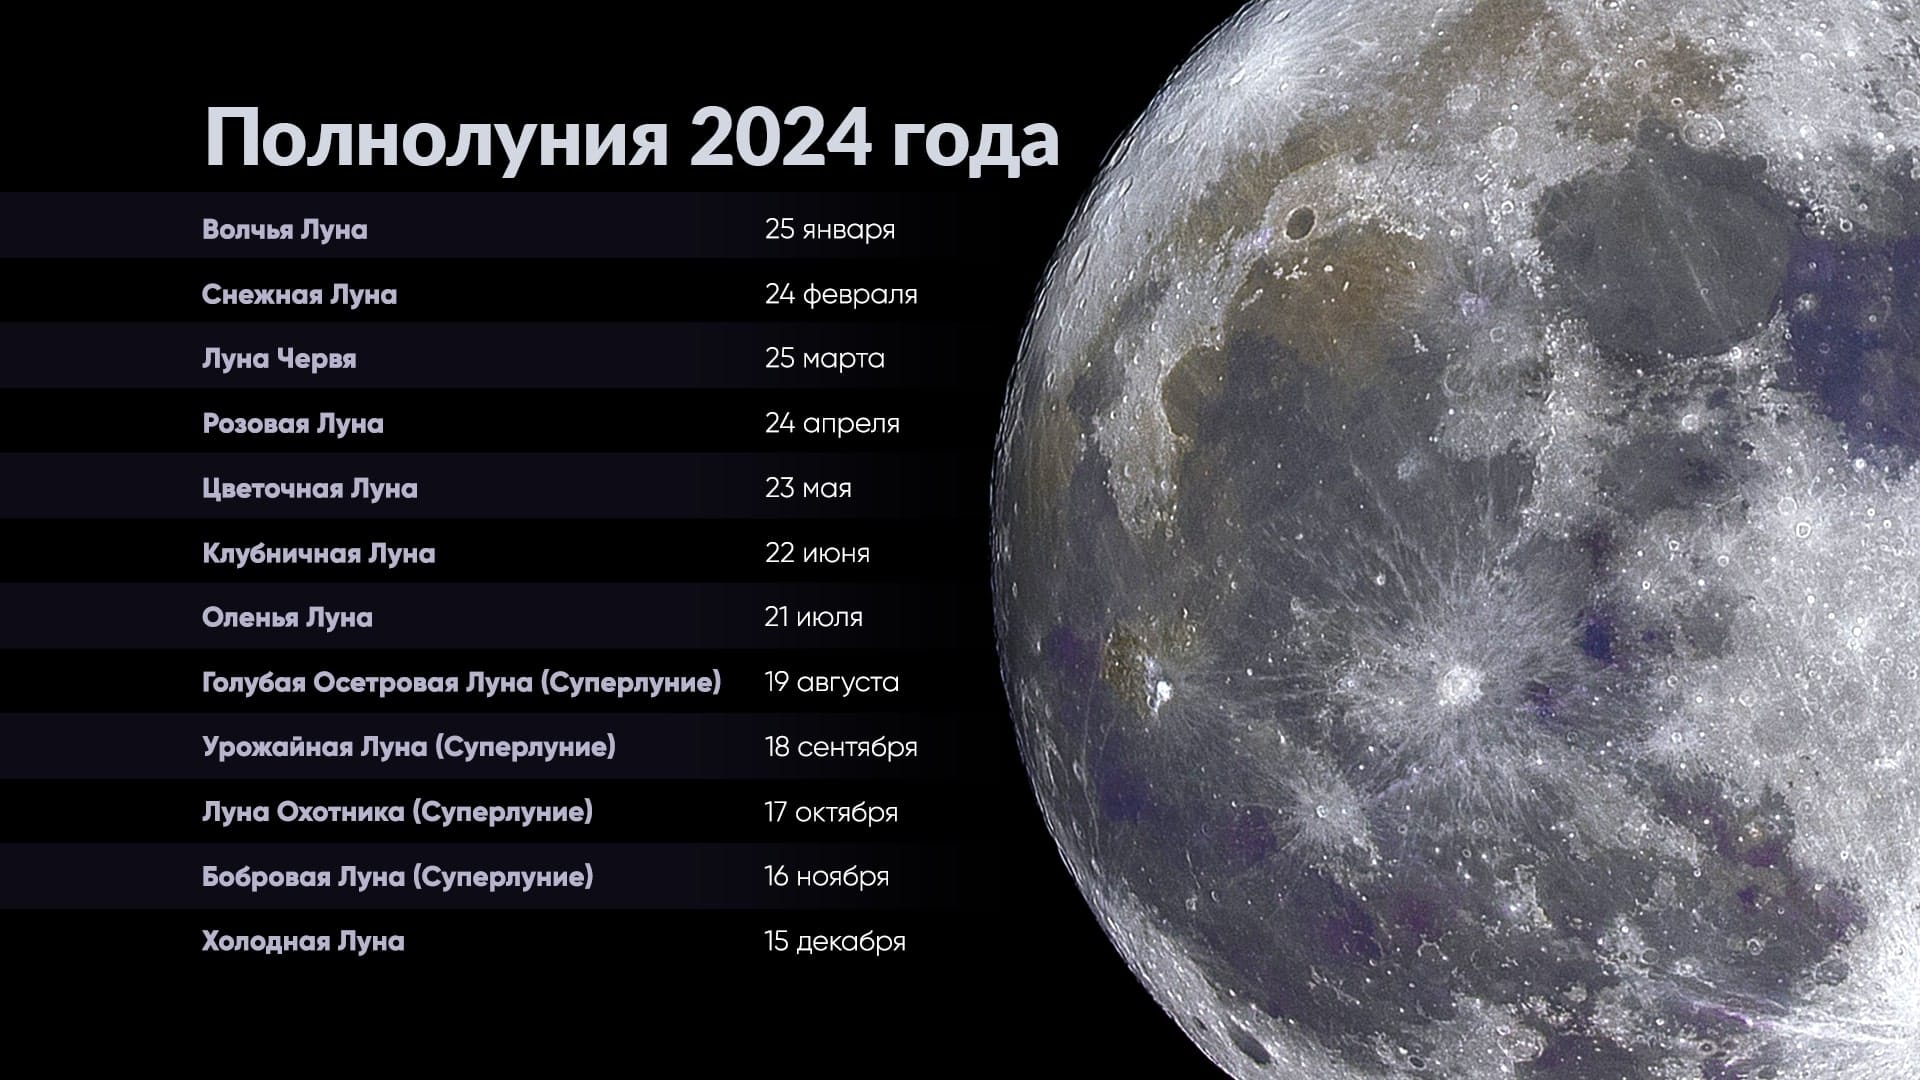 Полнолуния 2024 | Календарь полнолуний 2024 | Когда будет полнолуние 2024 |  Когда следующее полнолуние | Star Walk